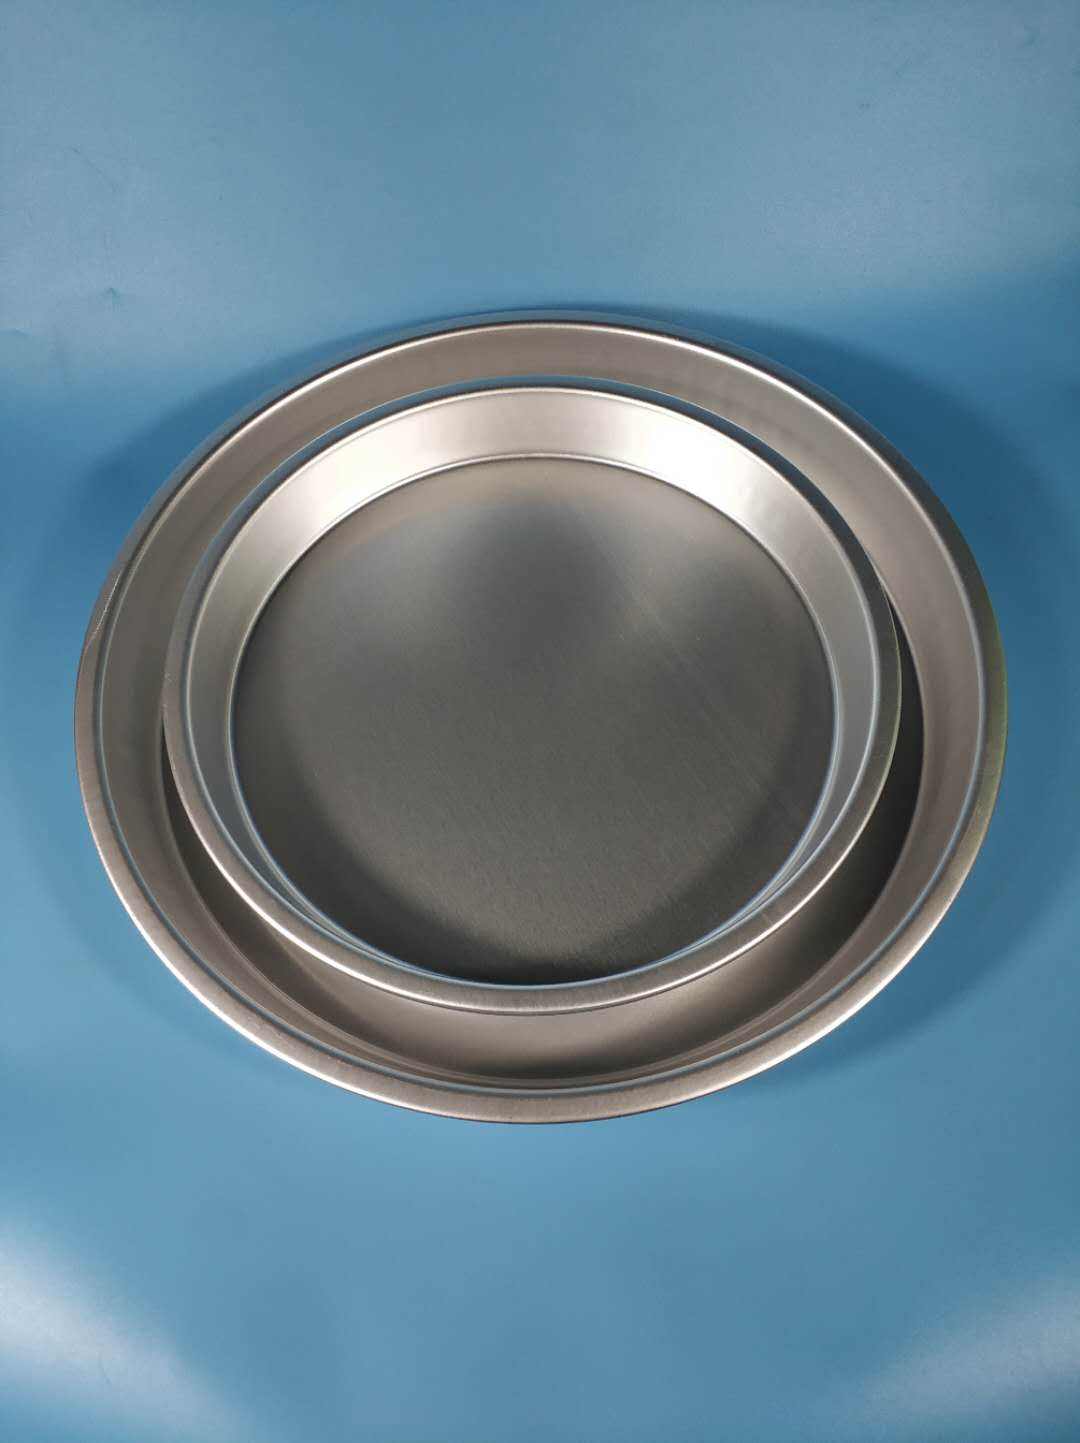 1060 Aluminum Alloy Disk Coating Aluminum Disks For Cooking Pots